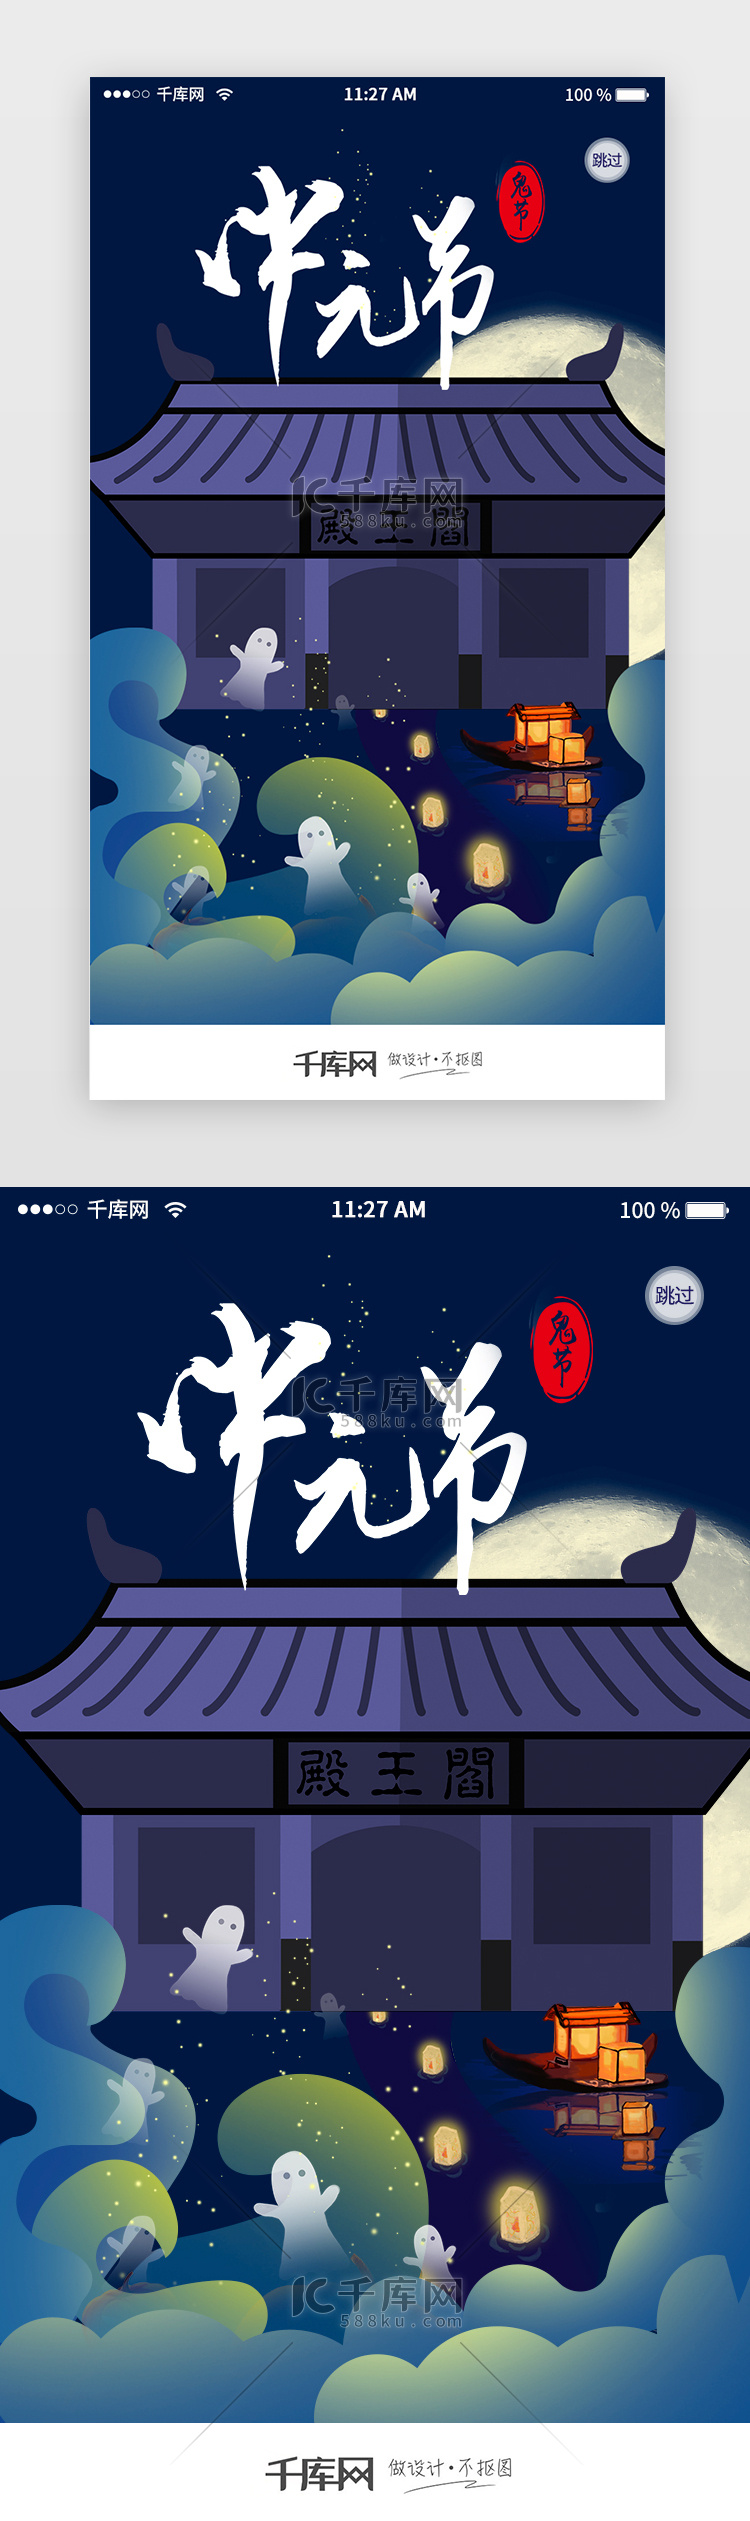 中国传统节日中元节app闪屏启动页引导页